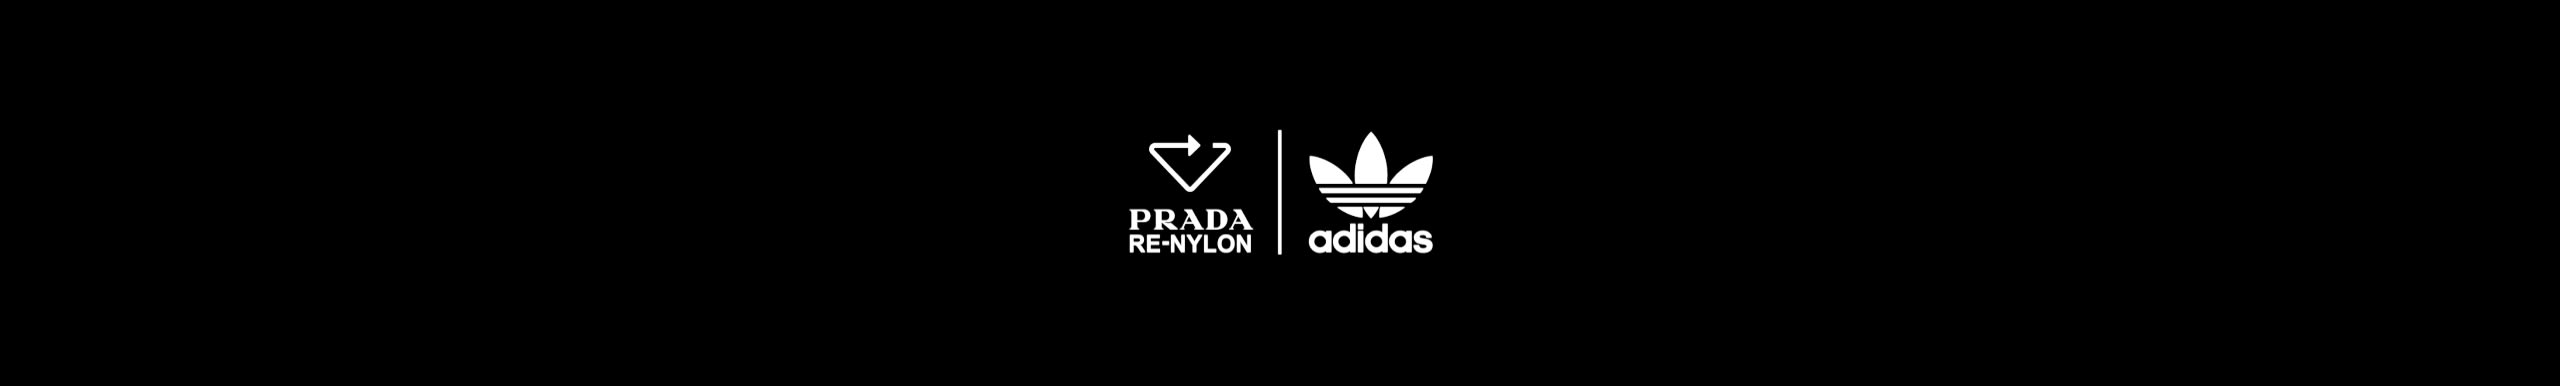 estoy de acuerdo con lantano Iluminar adidas by Prada Re-Nylon | adidas US